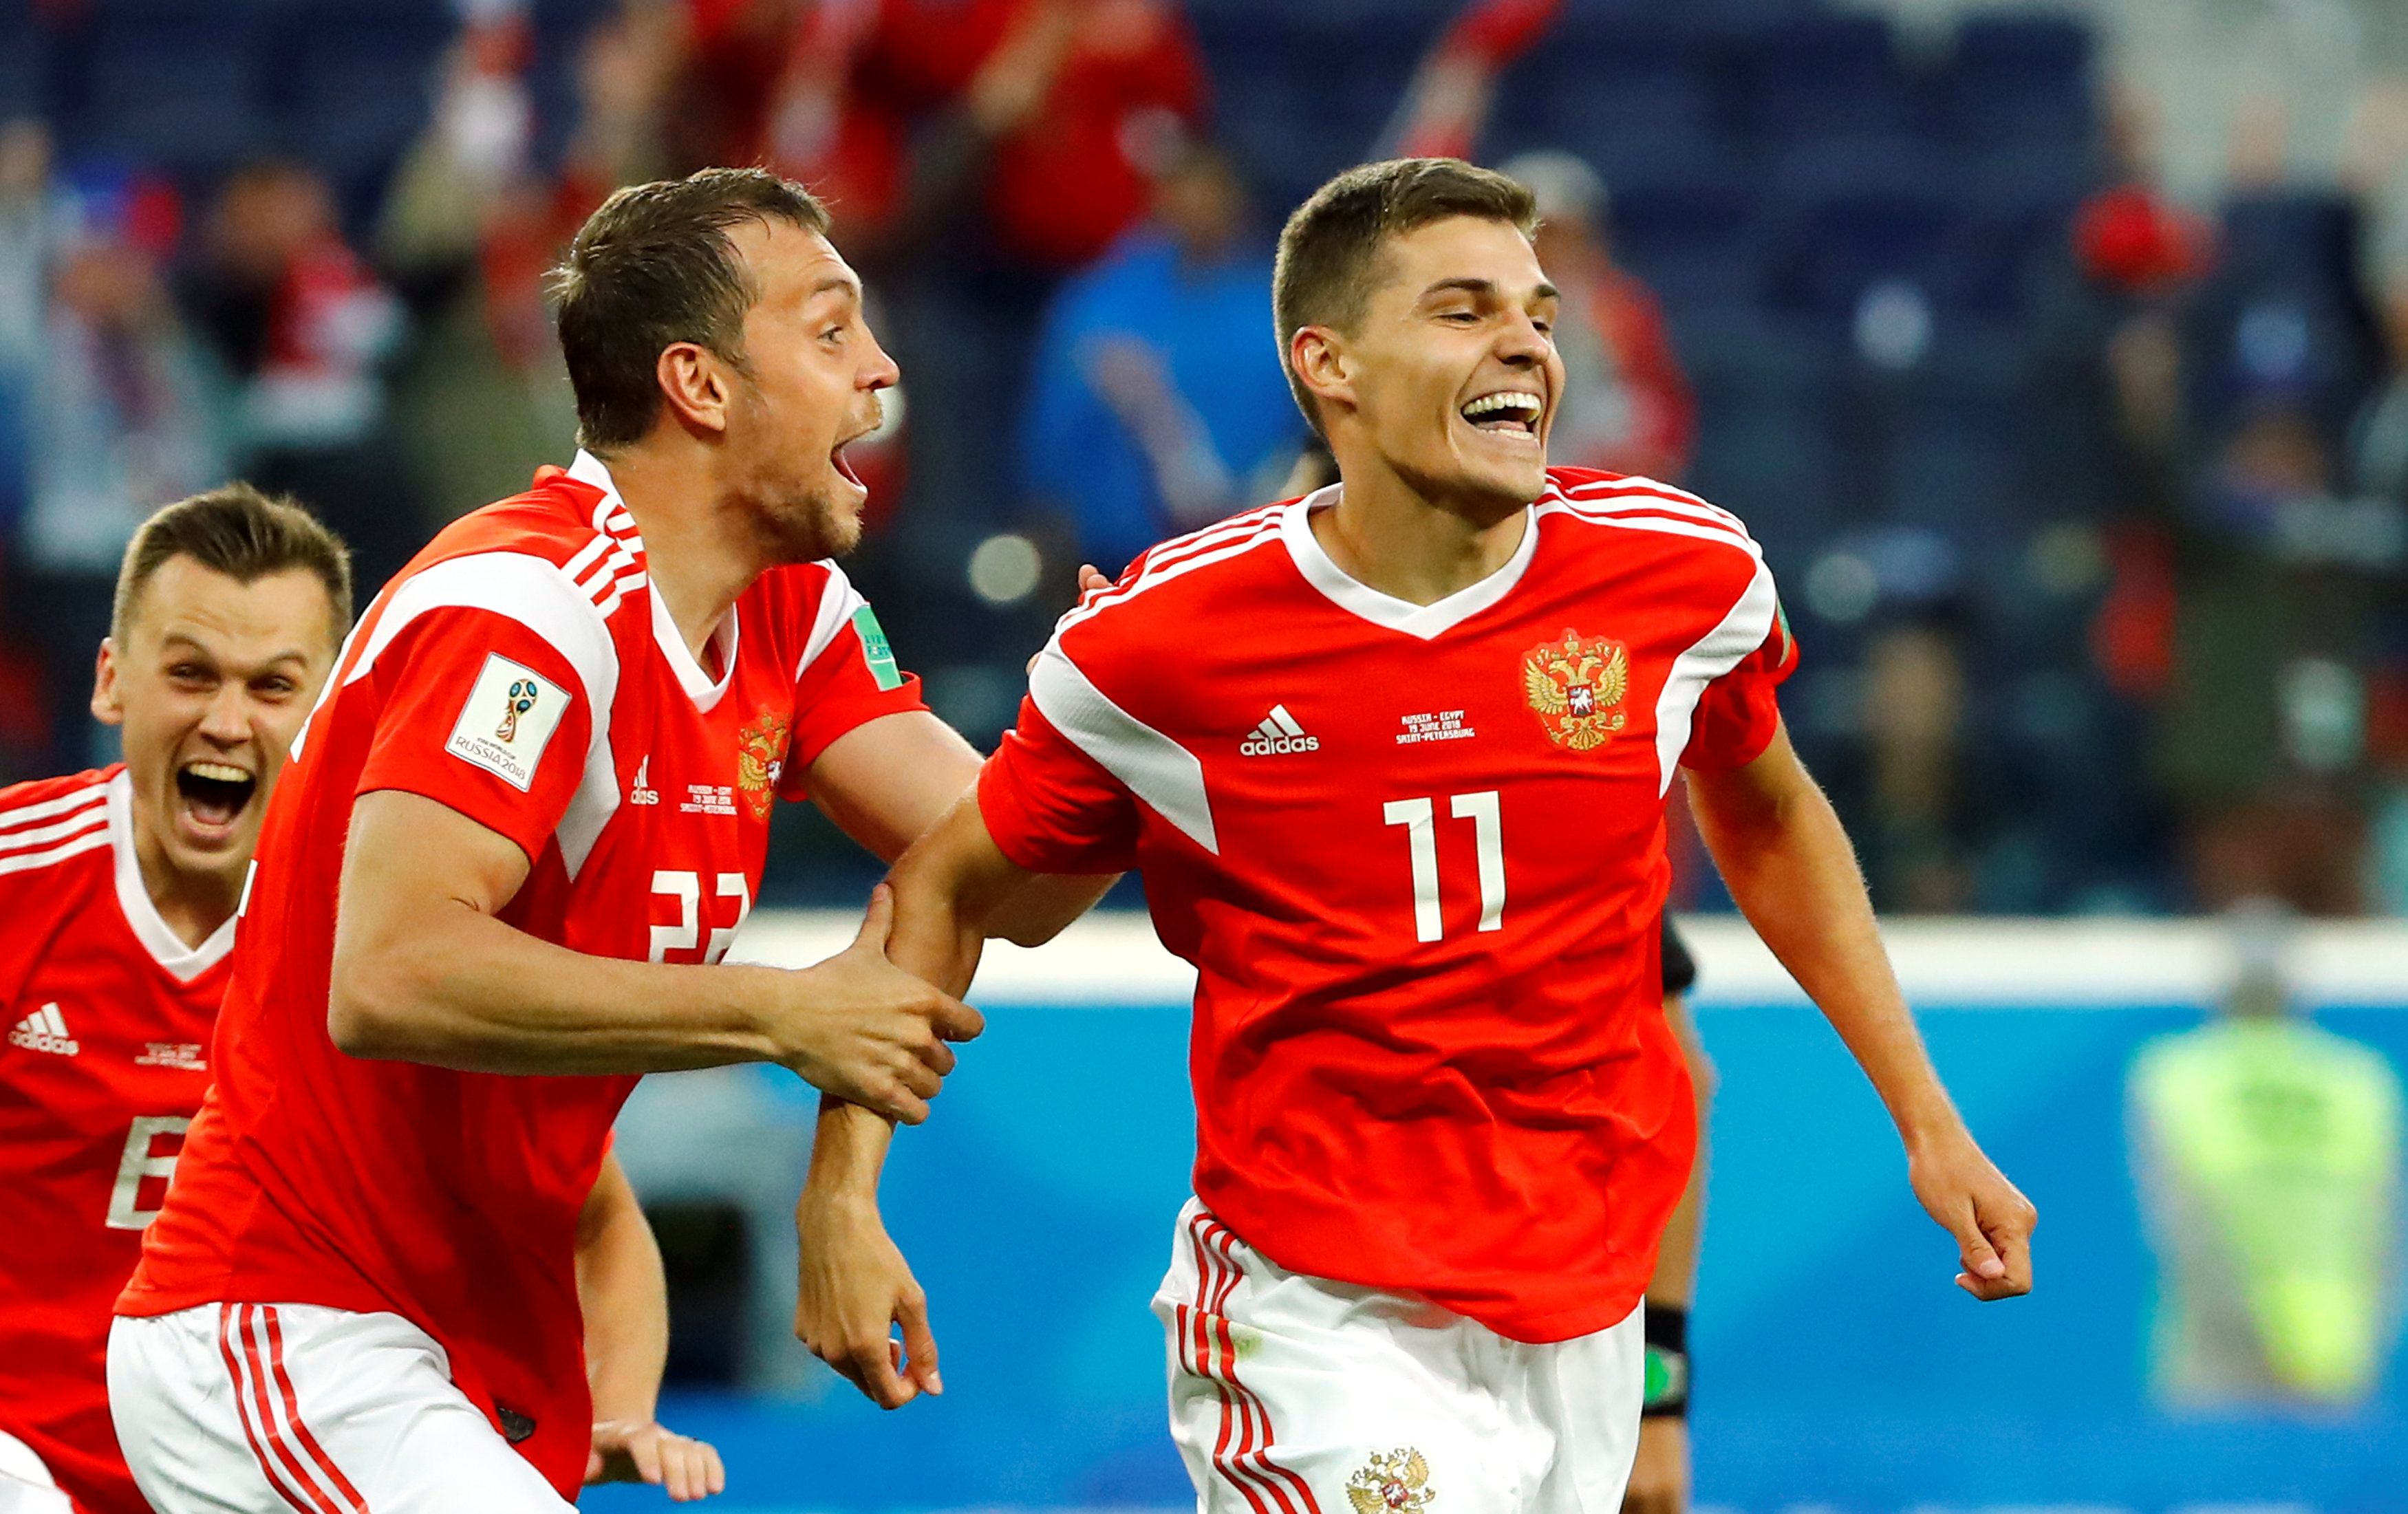 En FOTOS: Rusia dio la campanada al despachar a Egipto en el Mundial #Rusia2018